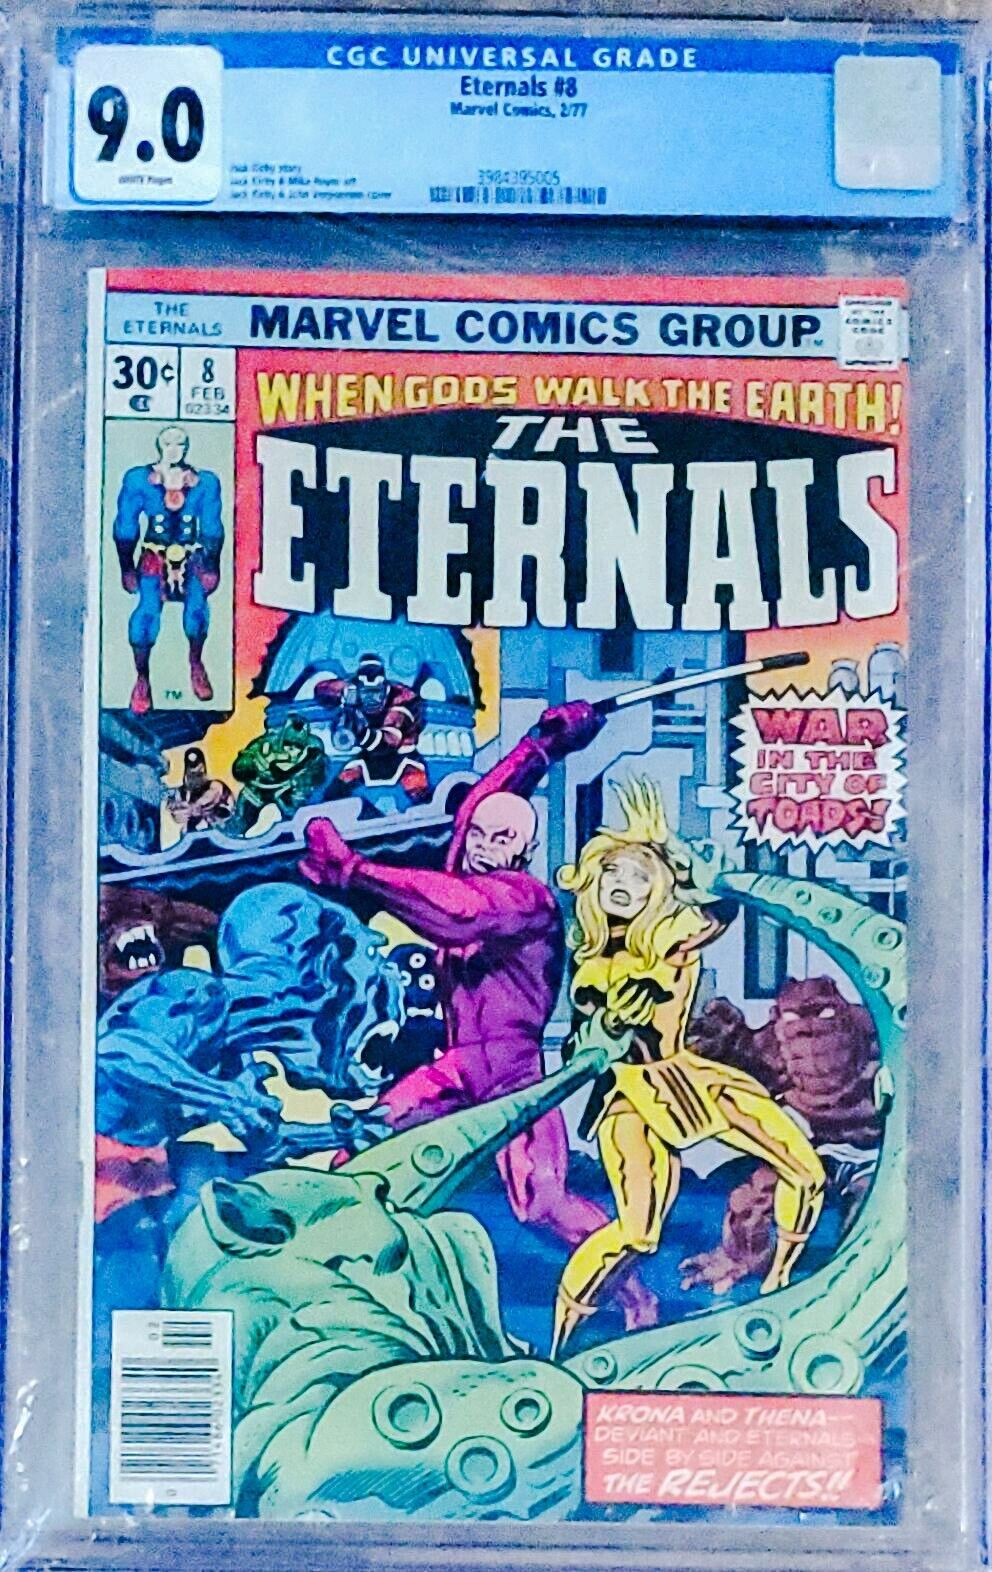 Eternals #8 CGC 9.0 (1977) Jack Kirby & John Verpoorten Cover Marvel Comics